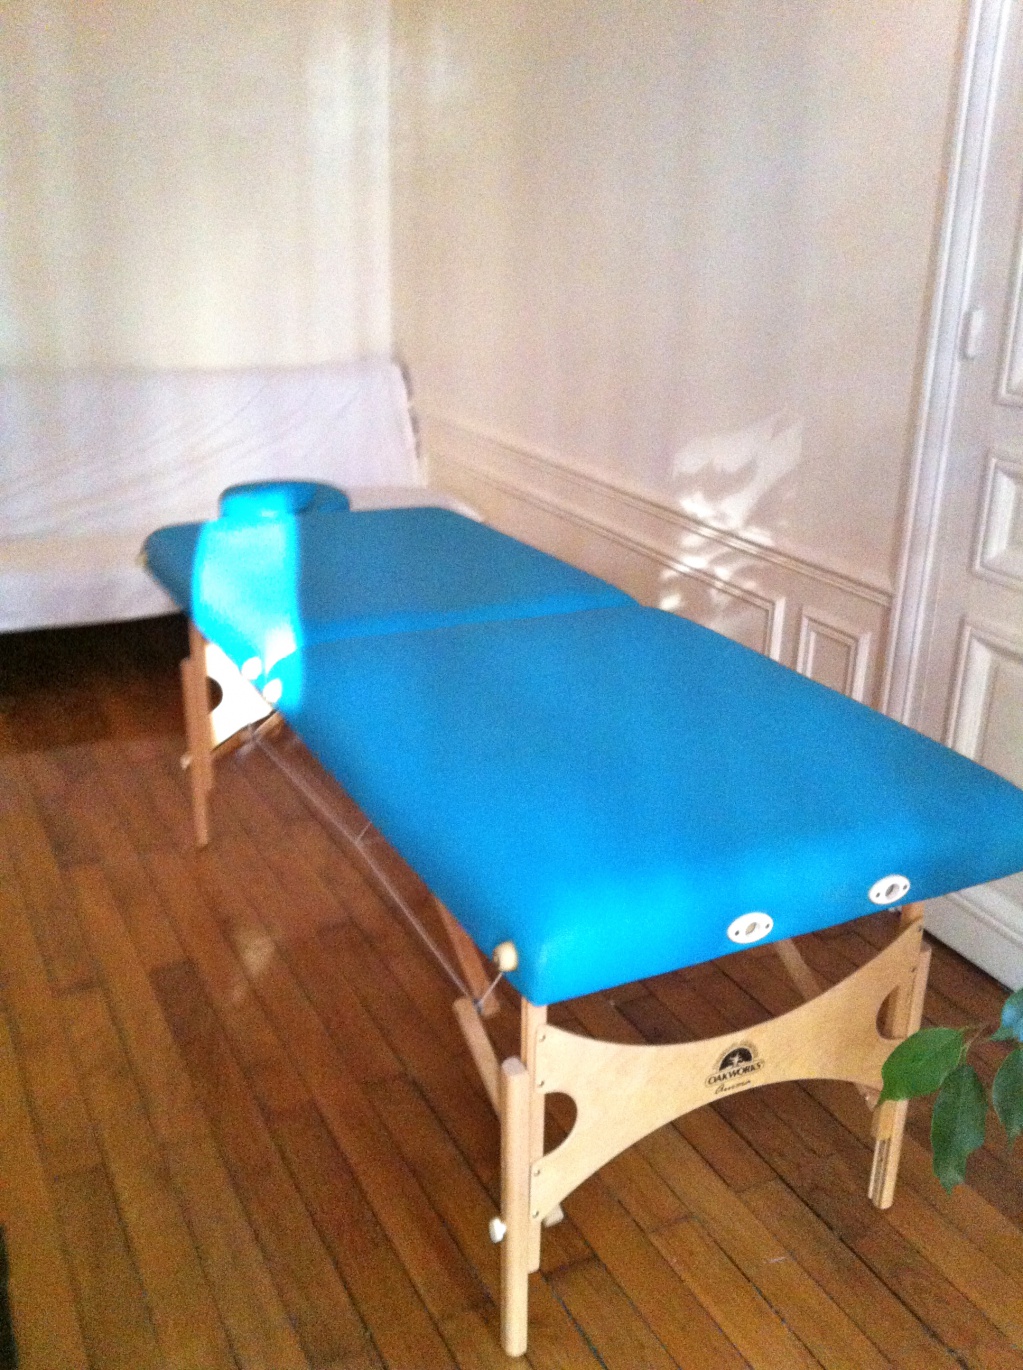 Location de salles équipées avec tables de massage, wifi, bureau, chaises/fauteuil. 